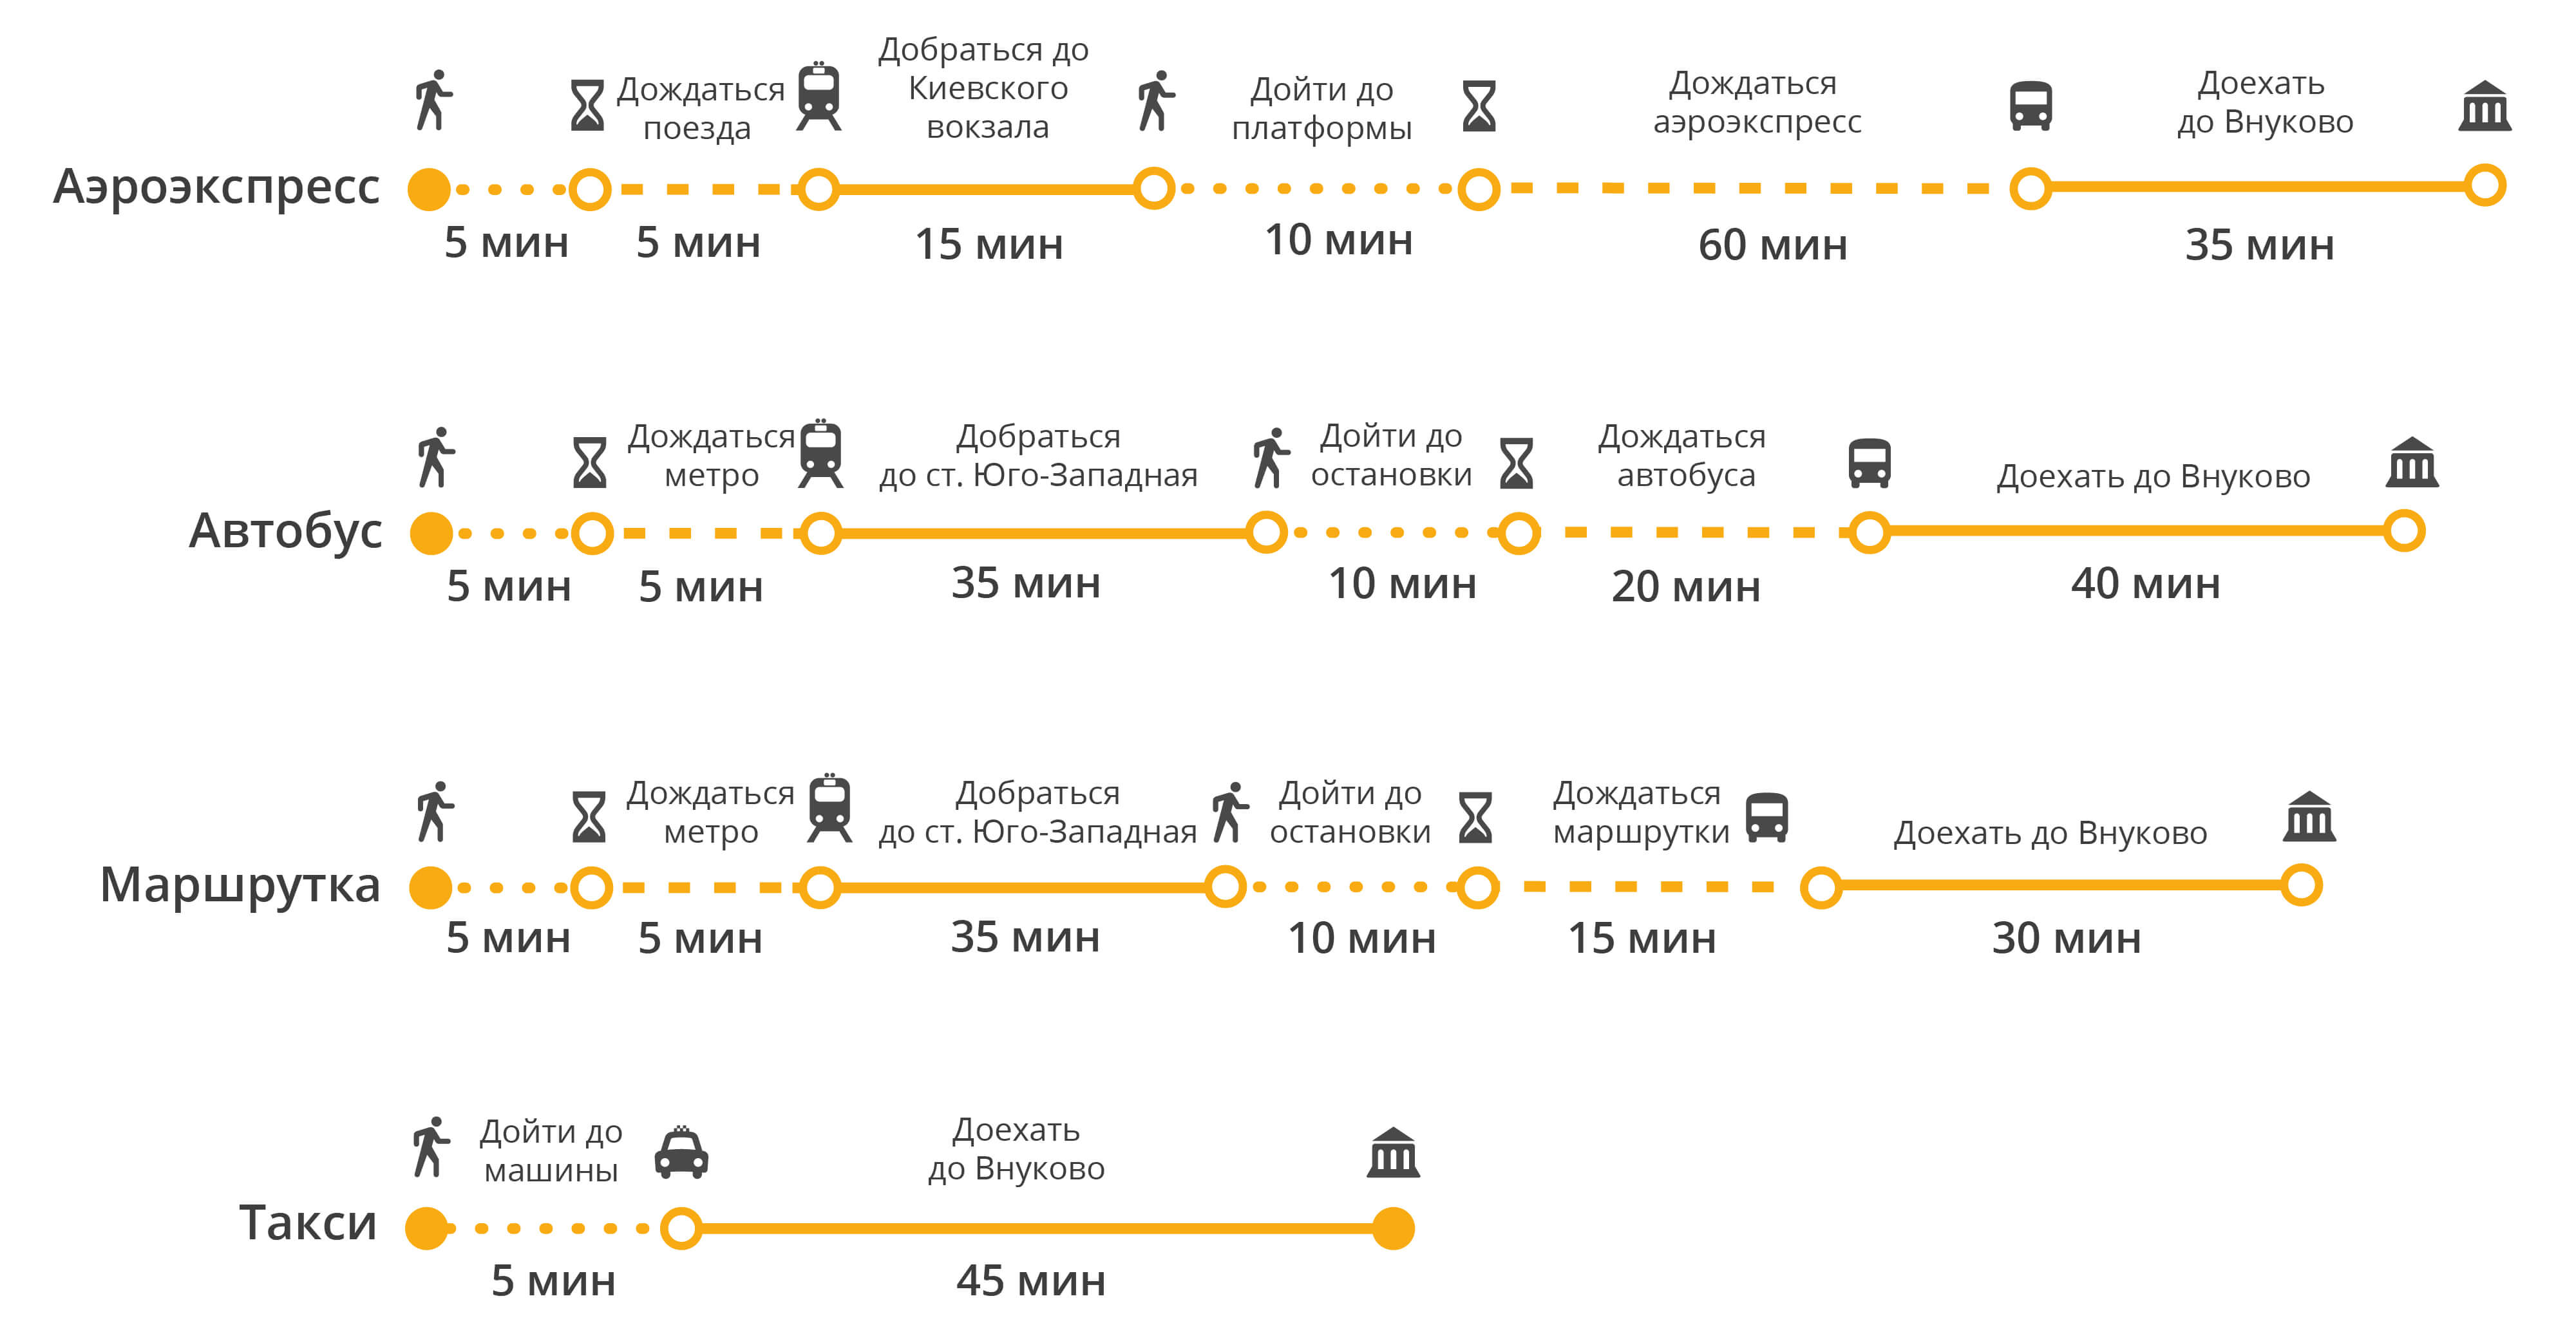 Как доехать до шереметьево с ленинградского вокзала: все способы с ценами